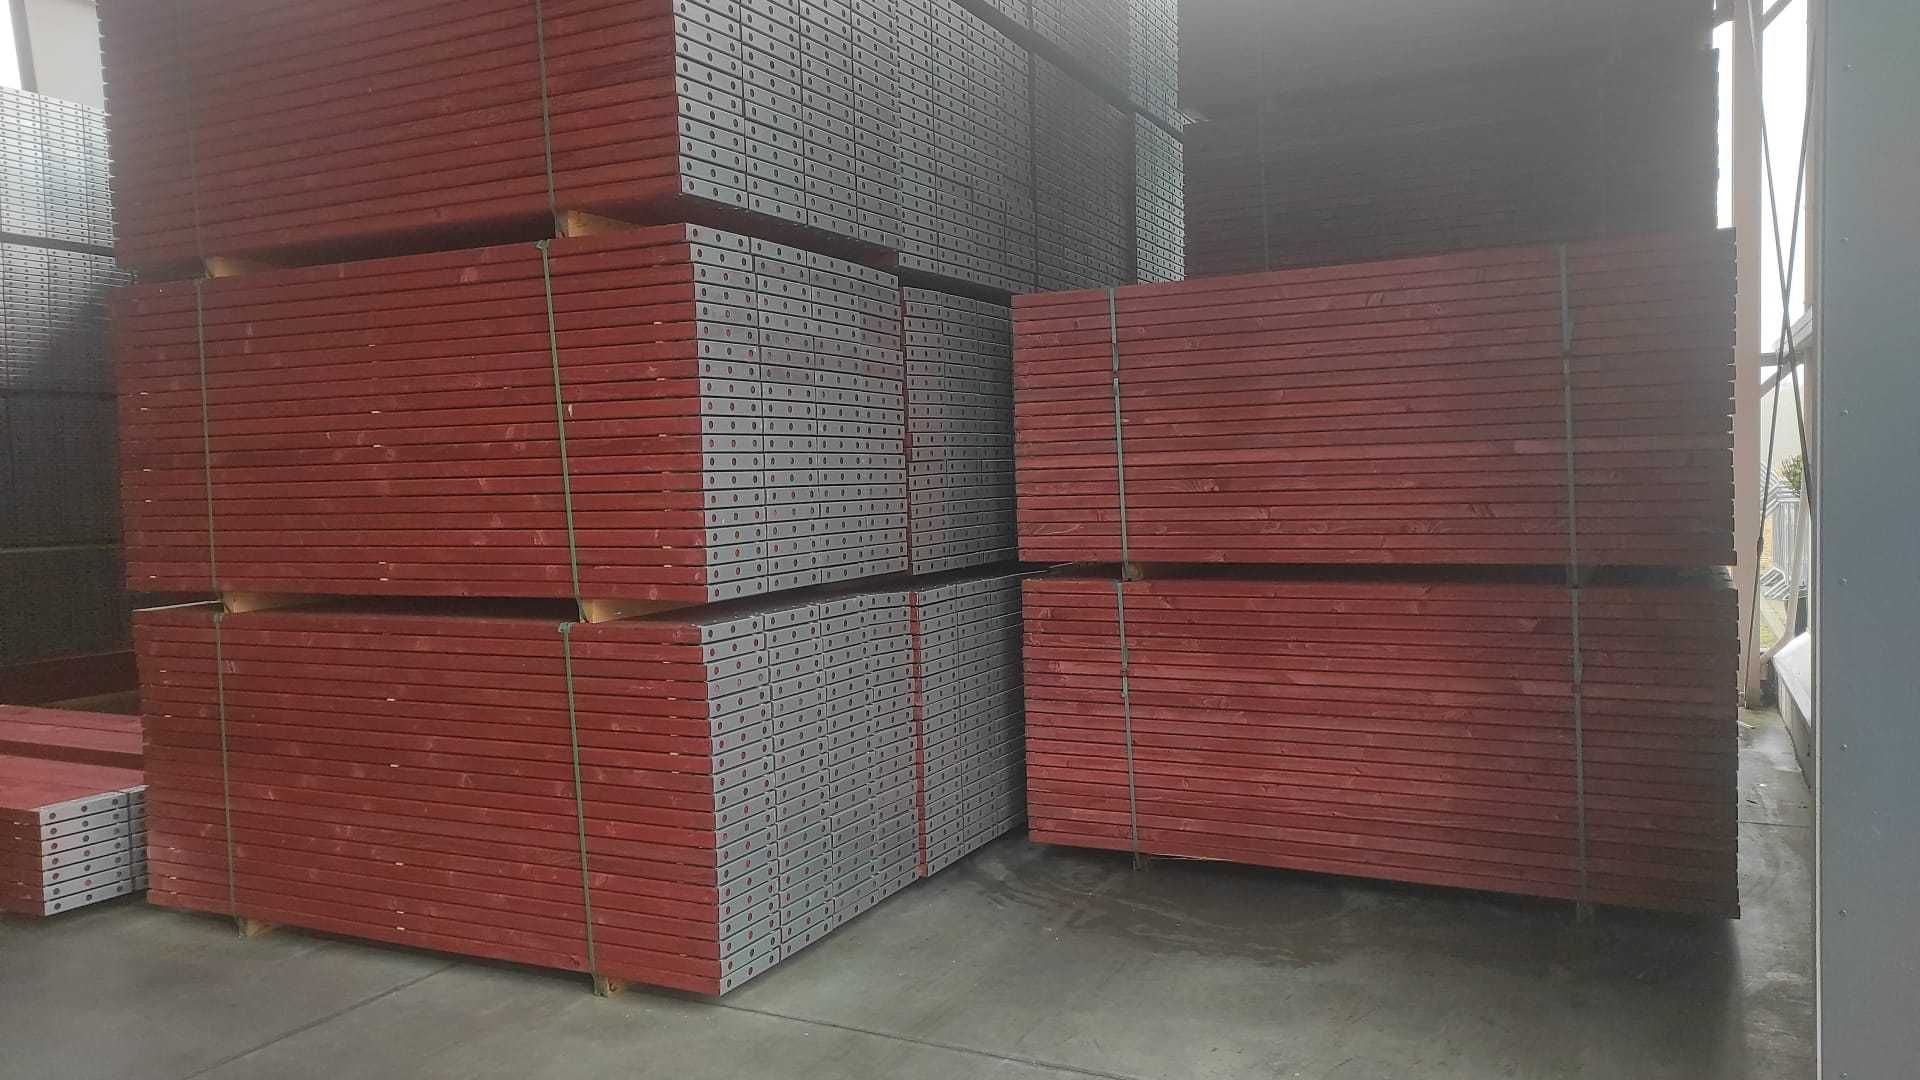 Rusztowania Ramowe/Elewacyjne - zestaw pow. rob. 336 m2 /wys. rob. 8m